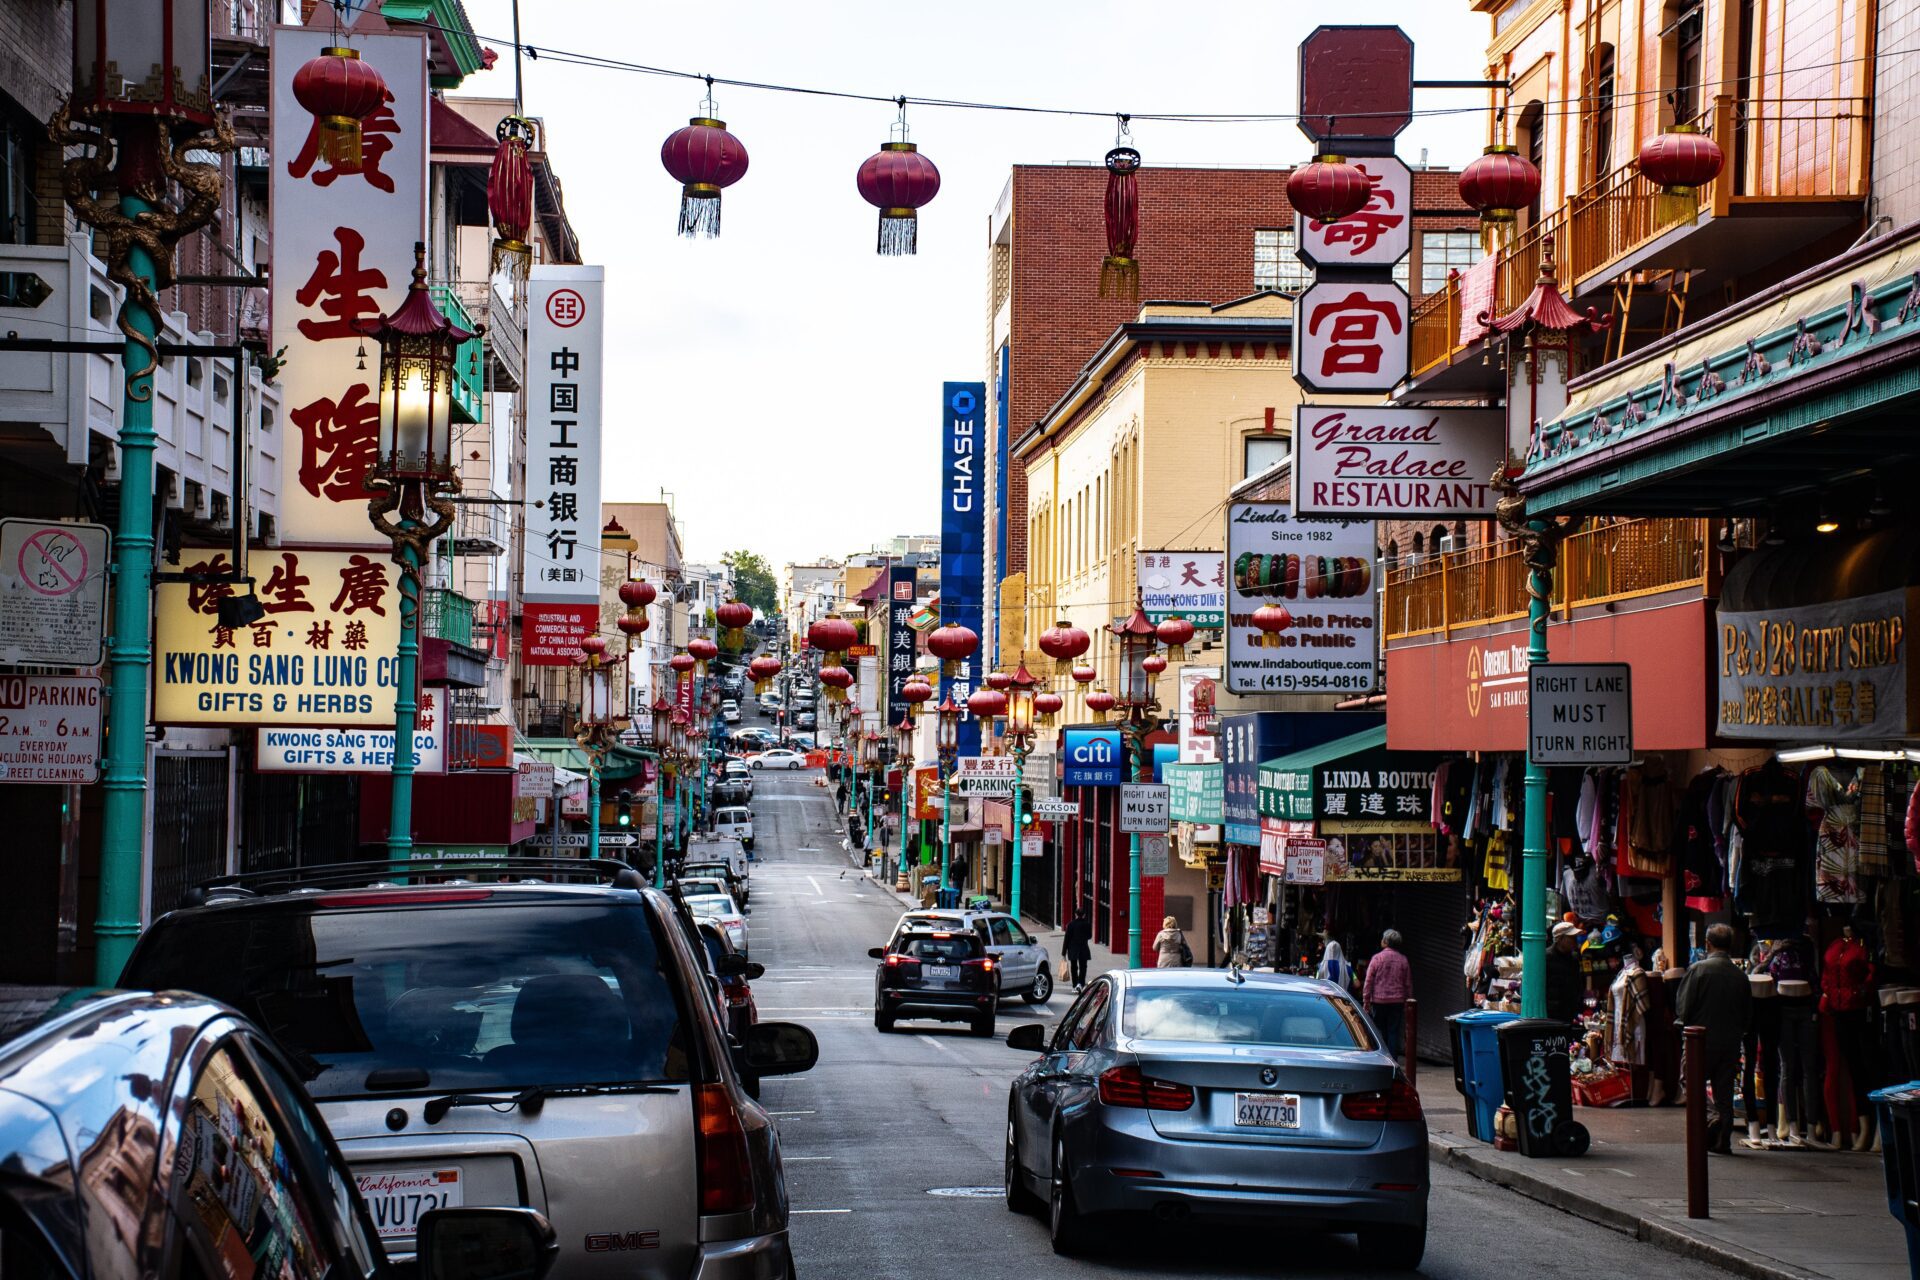 Chińska ulica, samochody, restauracje i podwieszone azjatyckie lampiony